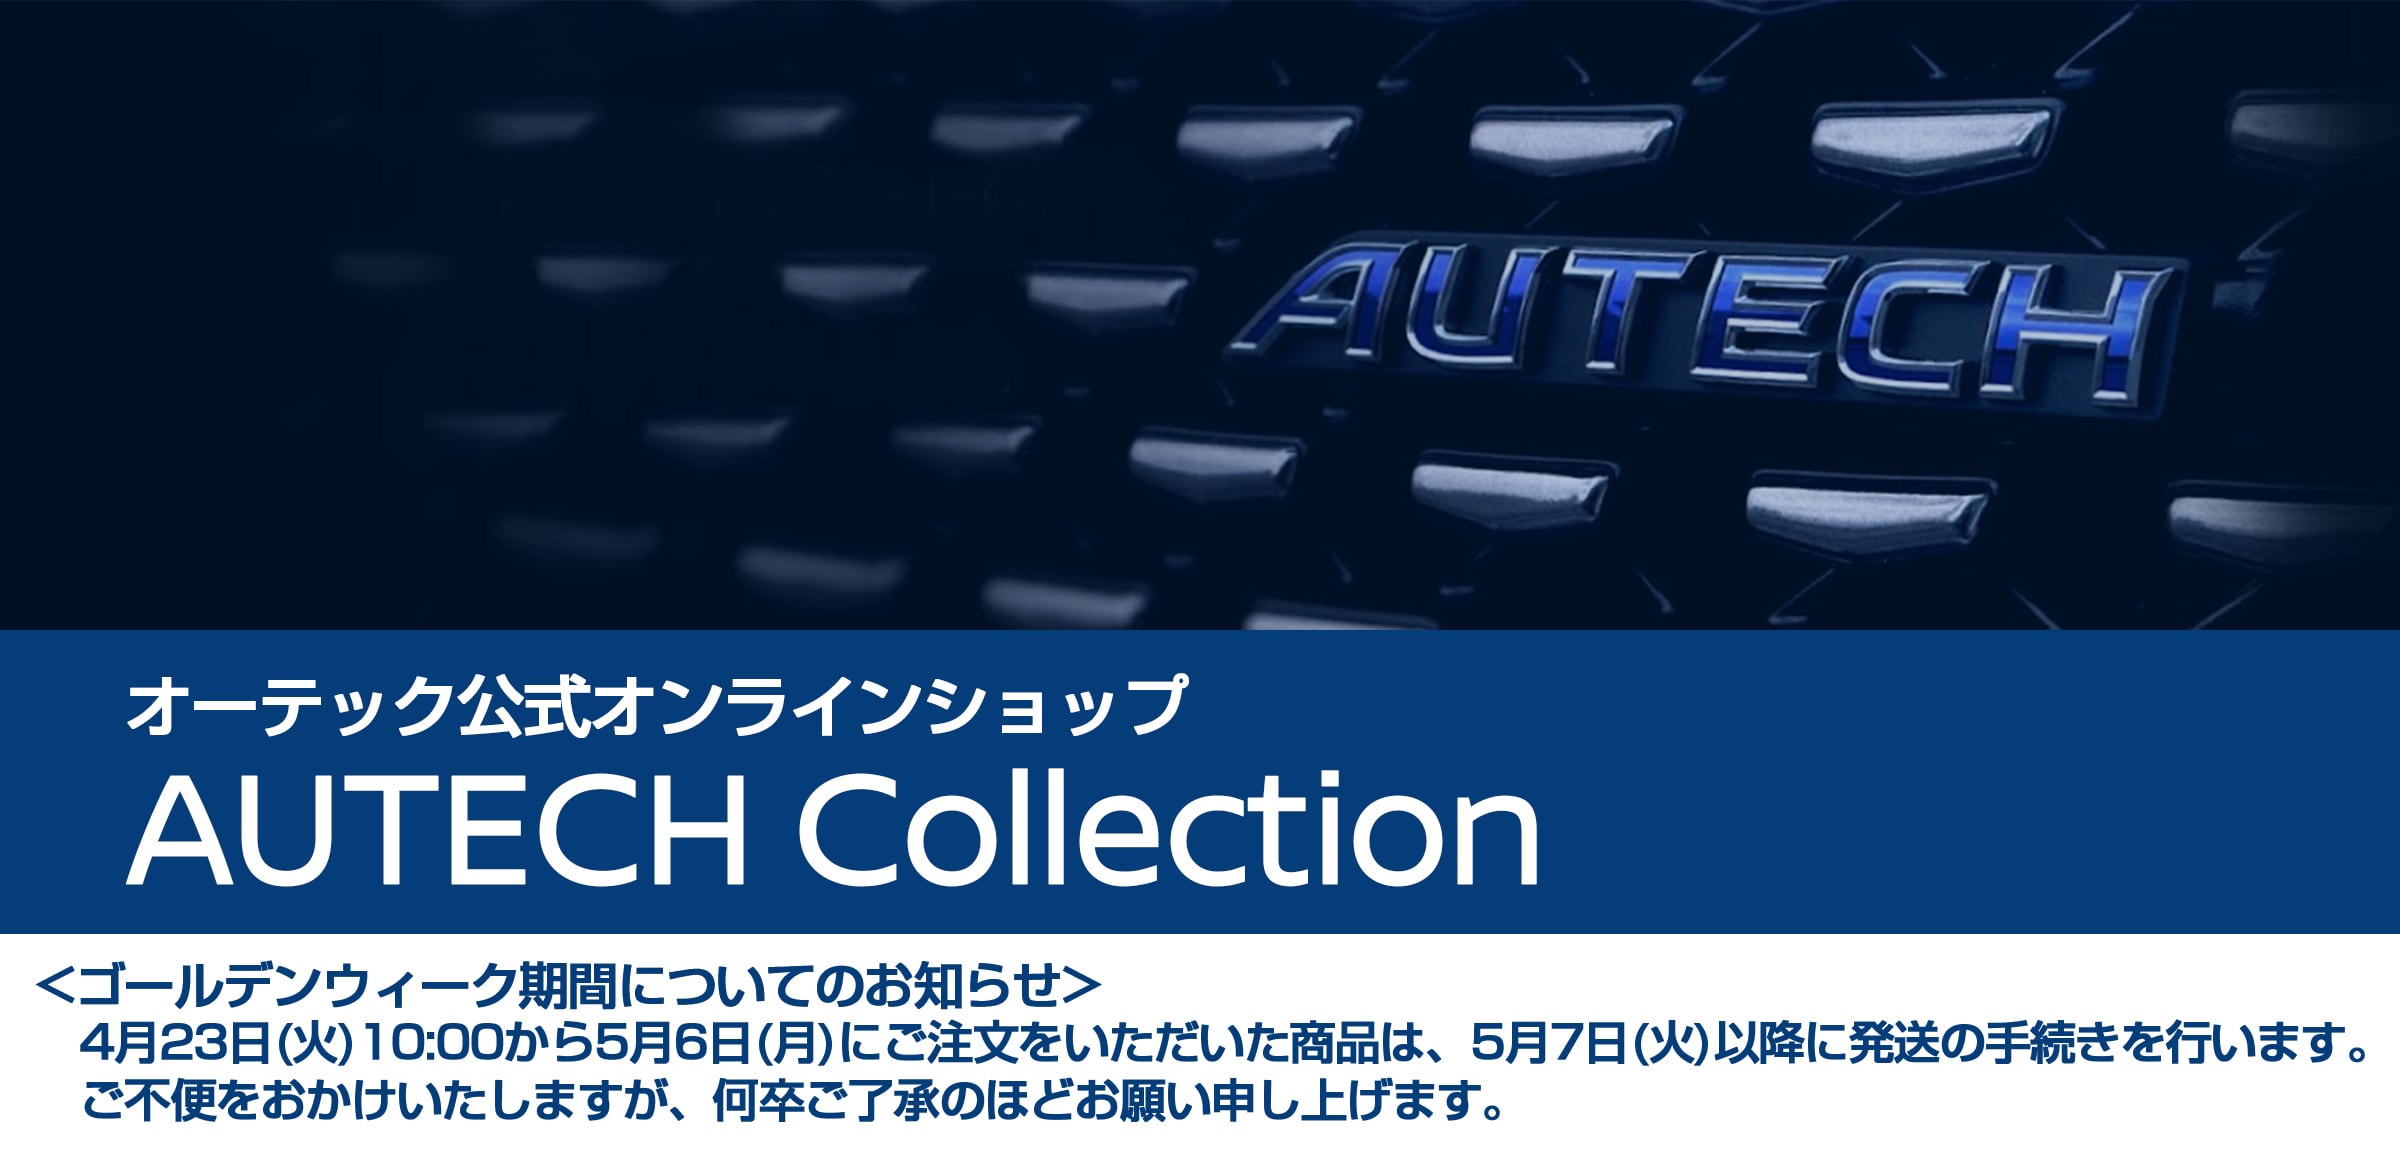 AUTECH collection